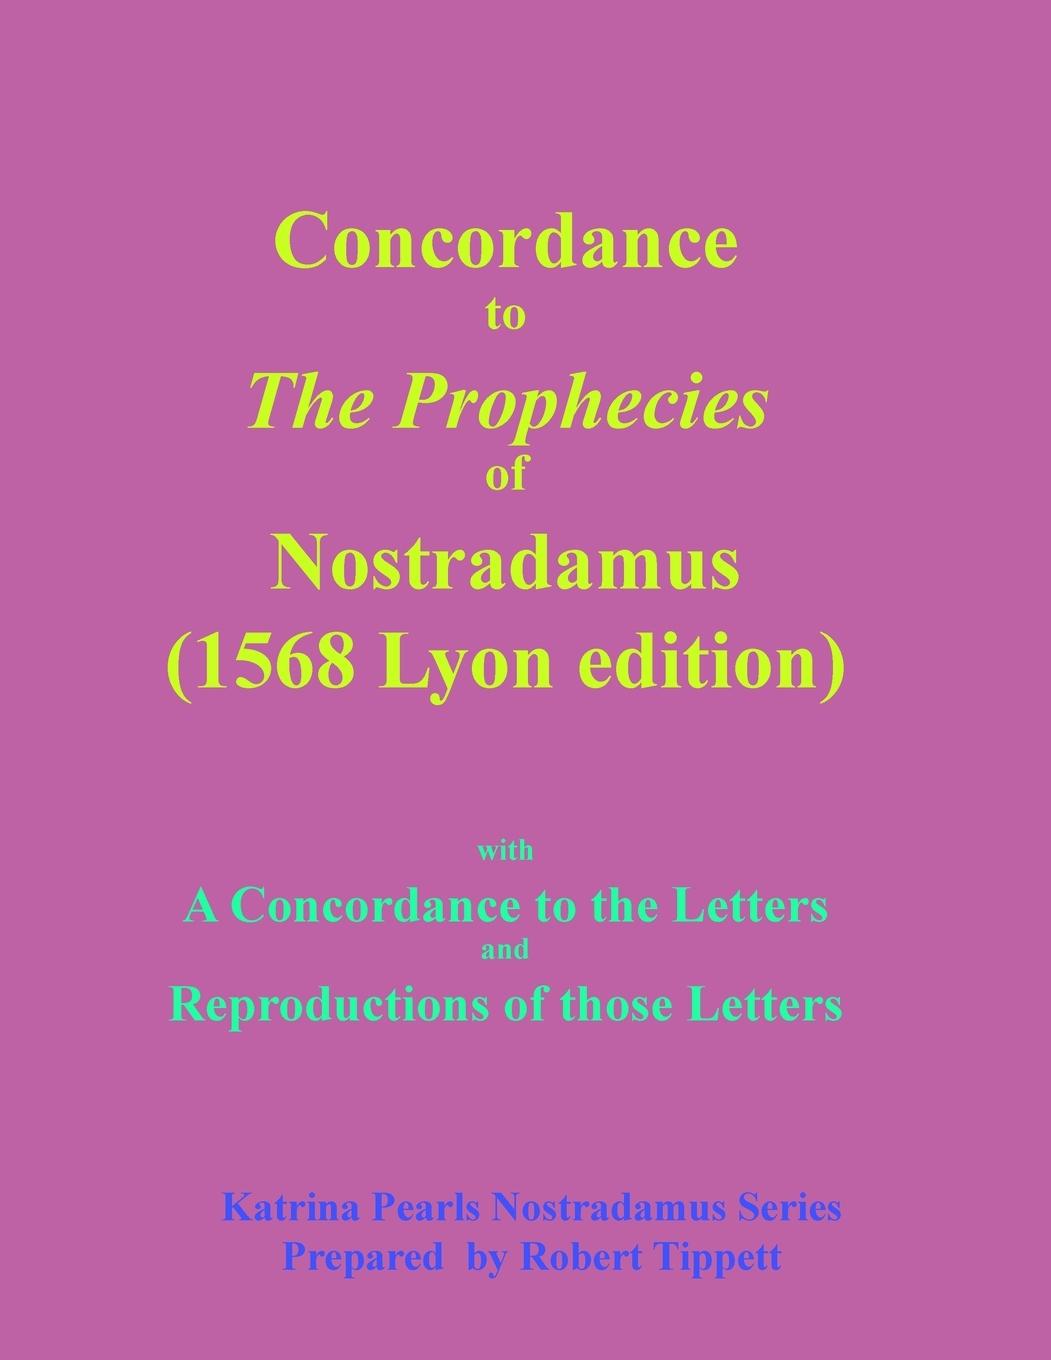 Carte Concordance to The Prophecies of Nostradamus 